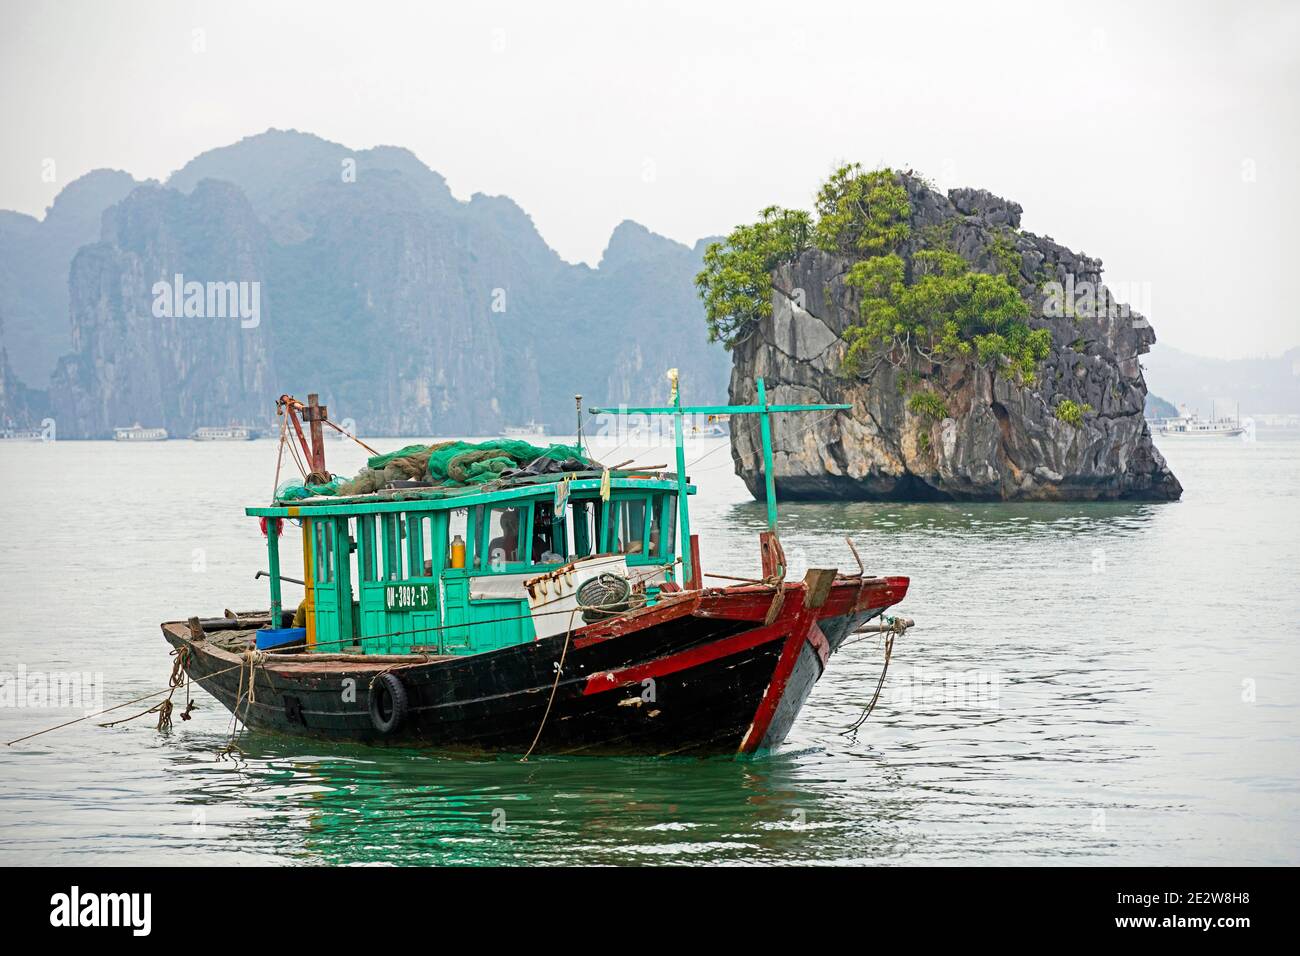 Imbarcazione da pesca in legno e isole monolitiche di pietra calcarea nella Baia di ha Long / Baia di ha Long / Vinh ha Long, provincia di Quang Ninh, Vietnam Foto Stock